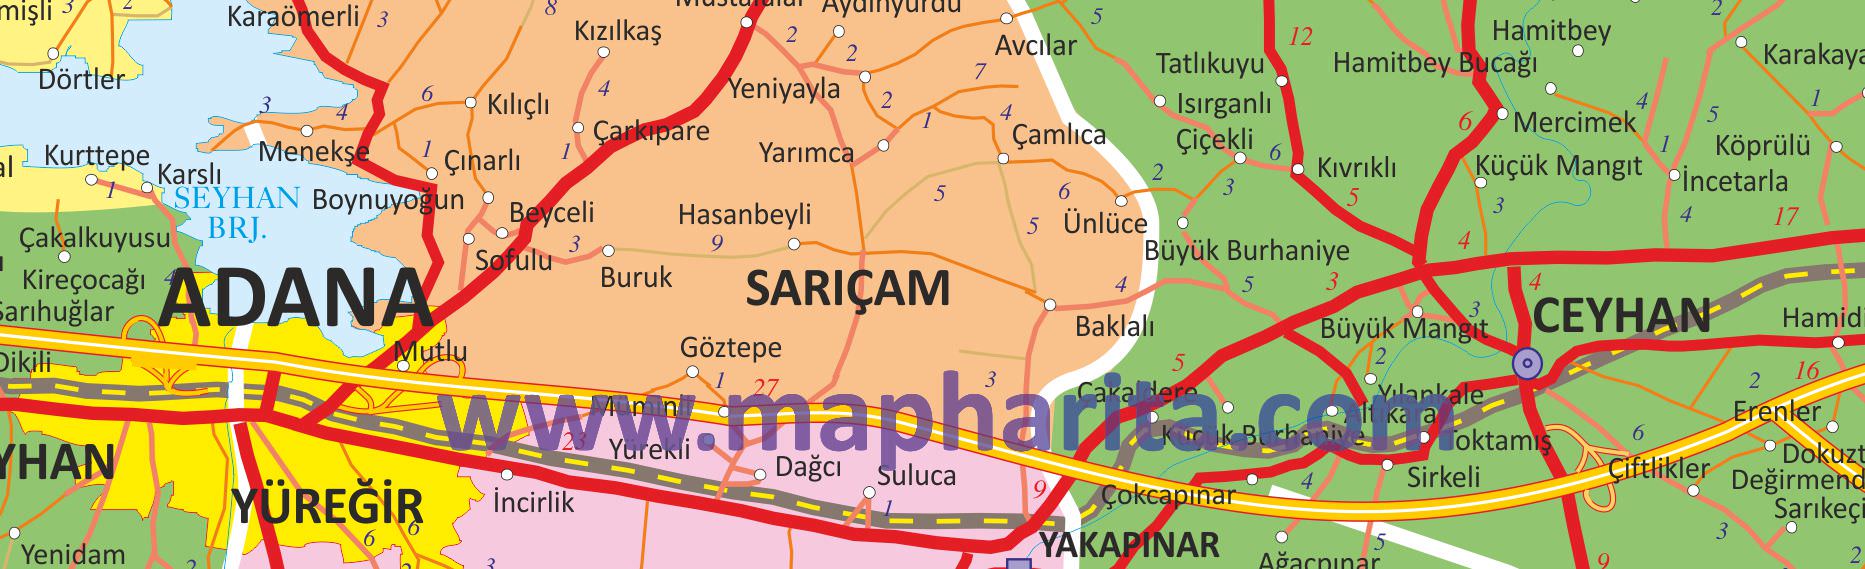 Adana İl Haritası Yakından Örnek Görüntüsü